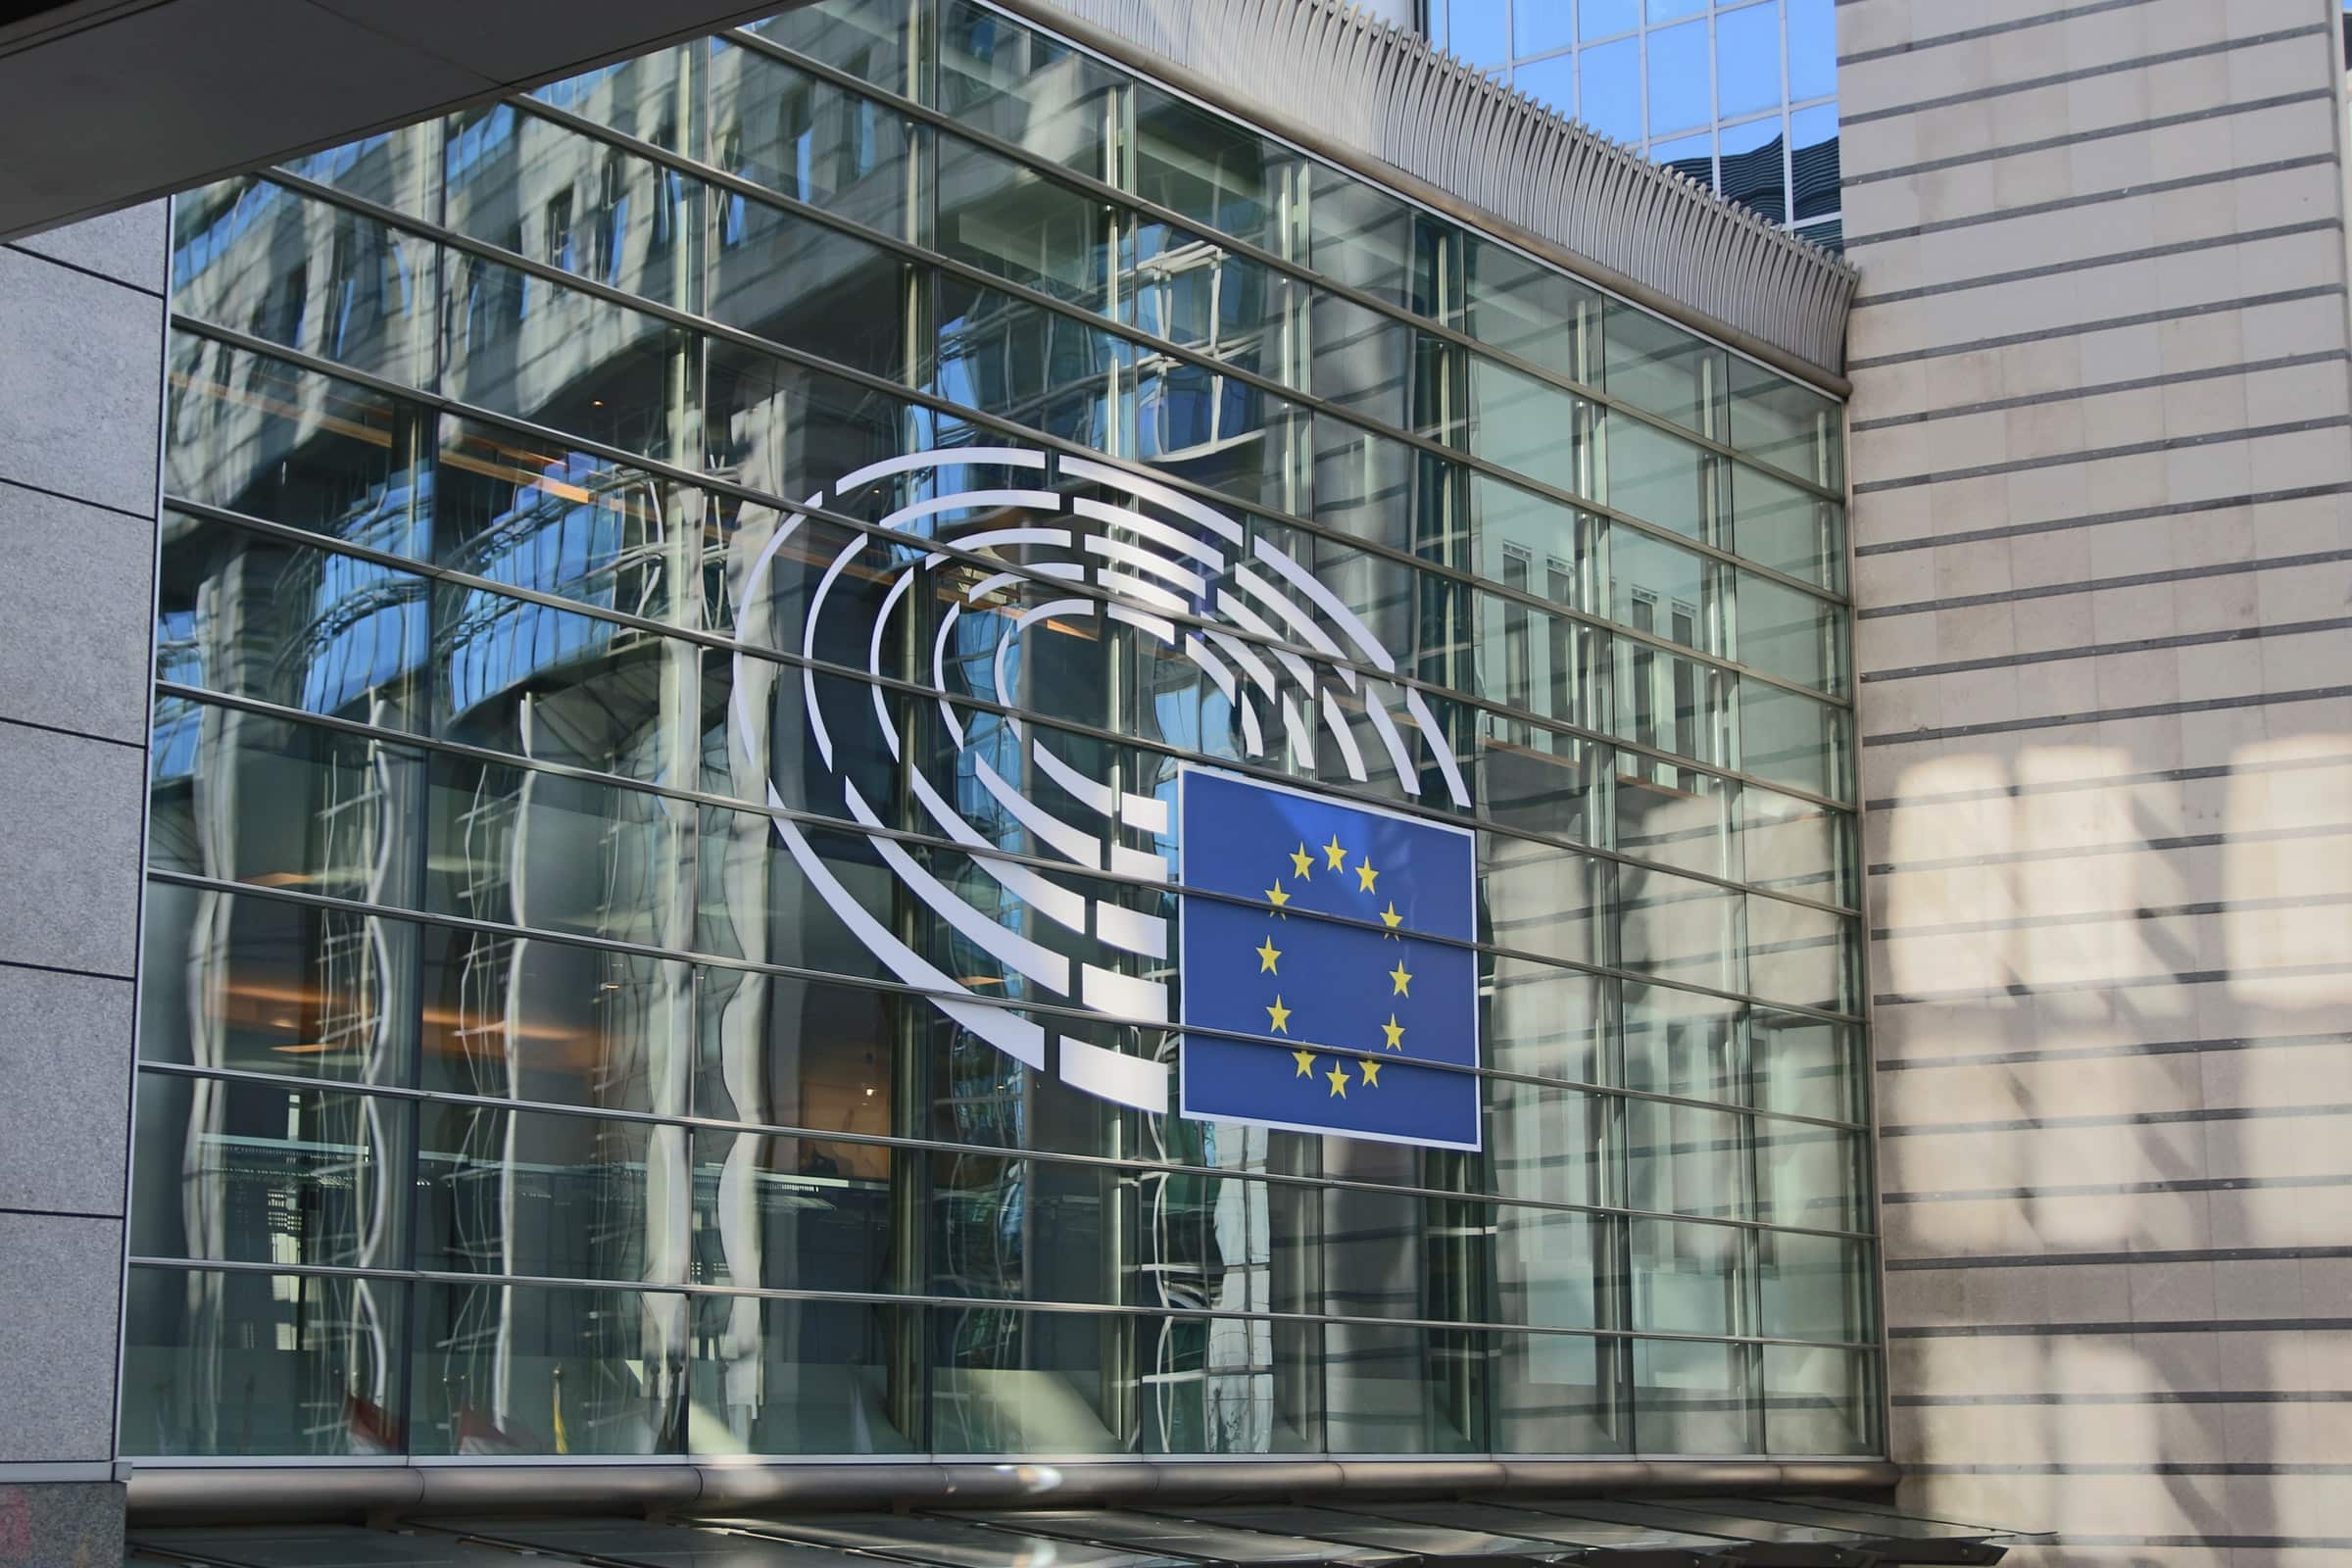 Photographie de la devanture du parlement européen.